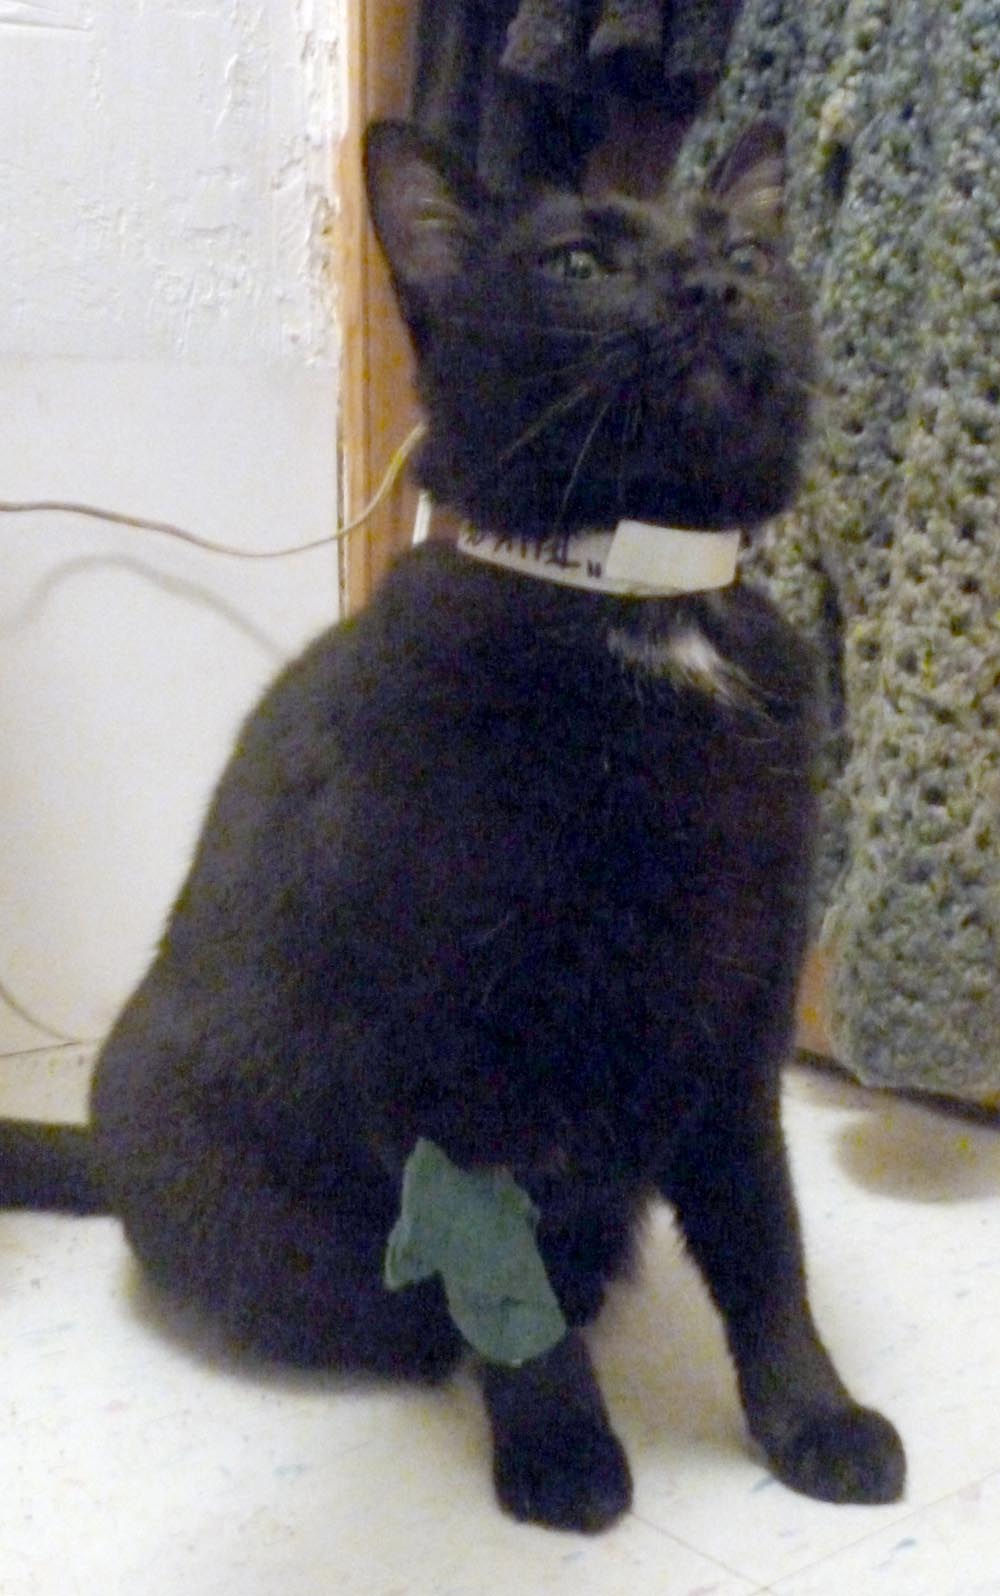 black cat with bandage